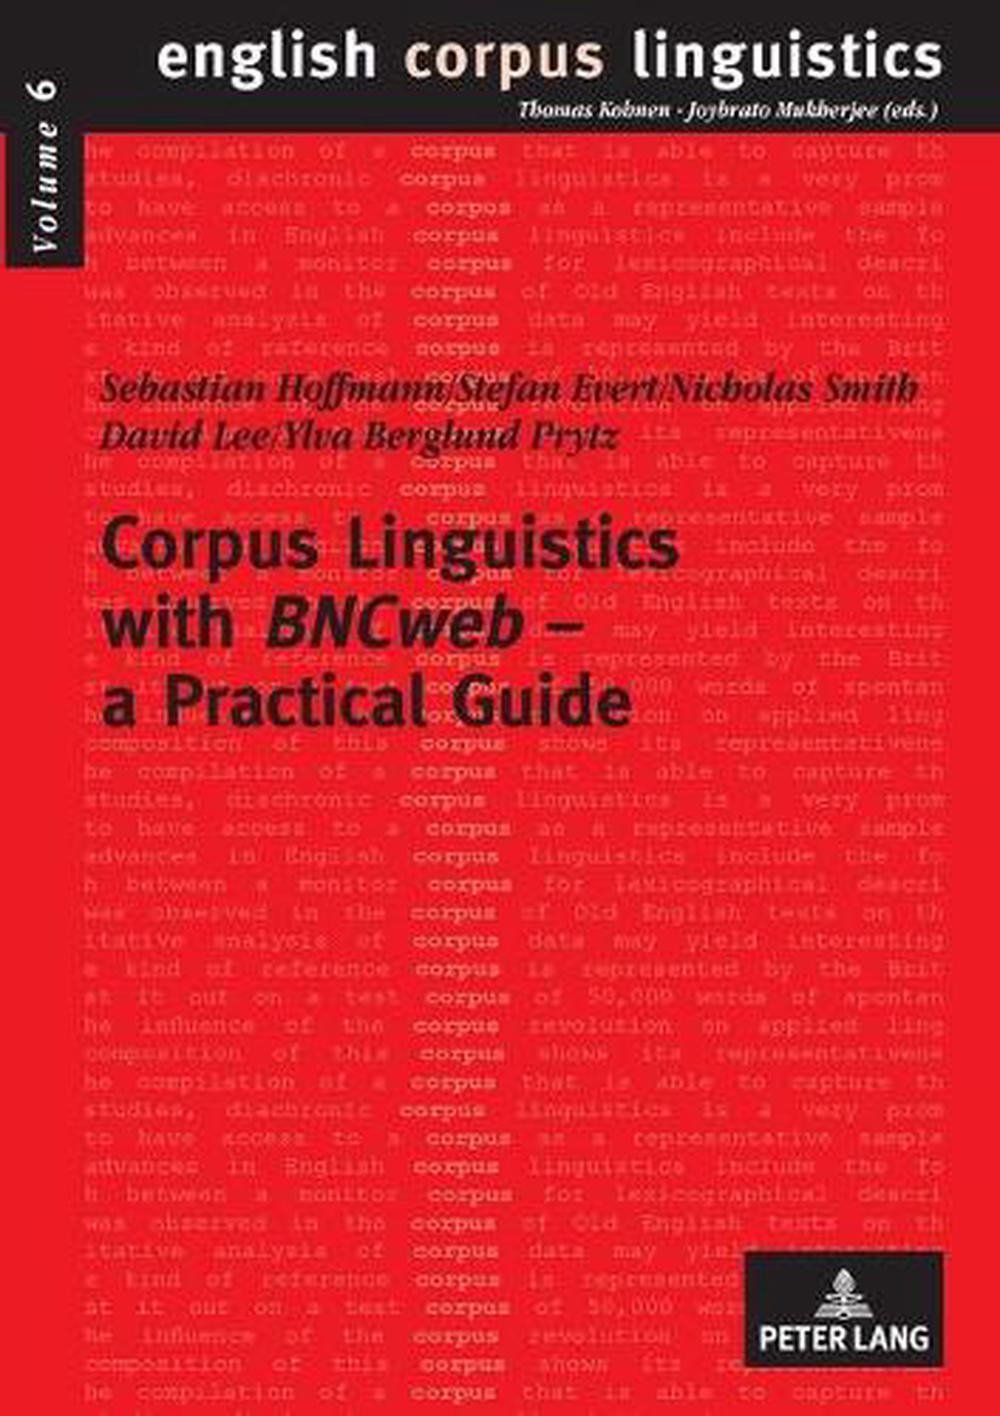 phd in corpus linguistics